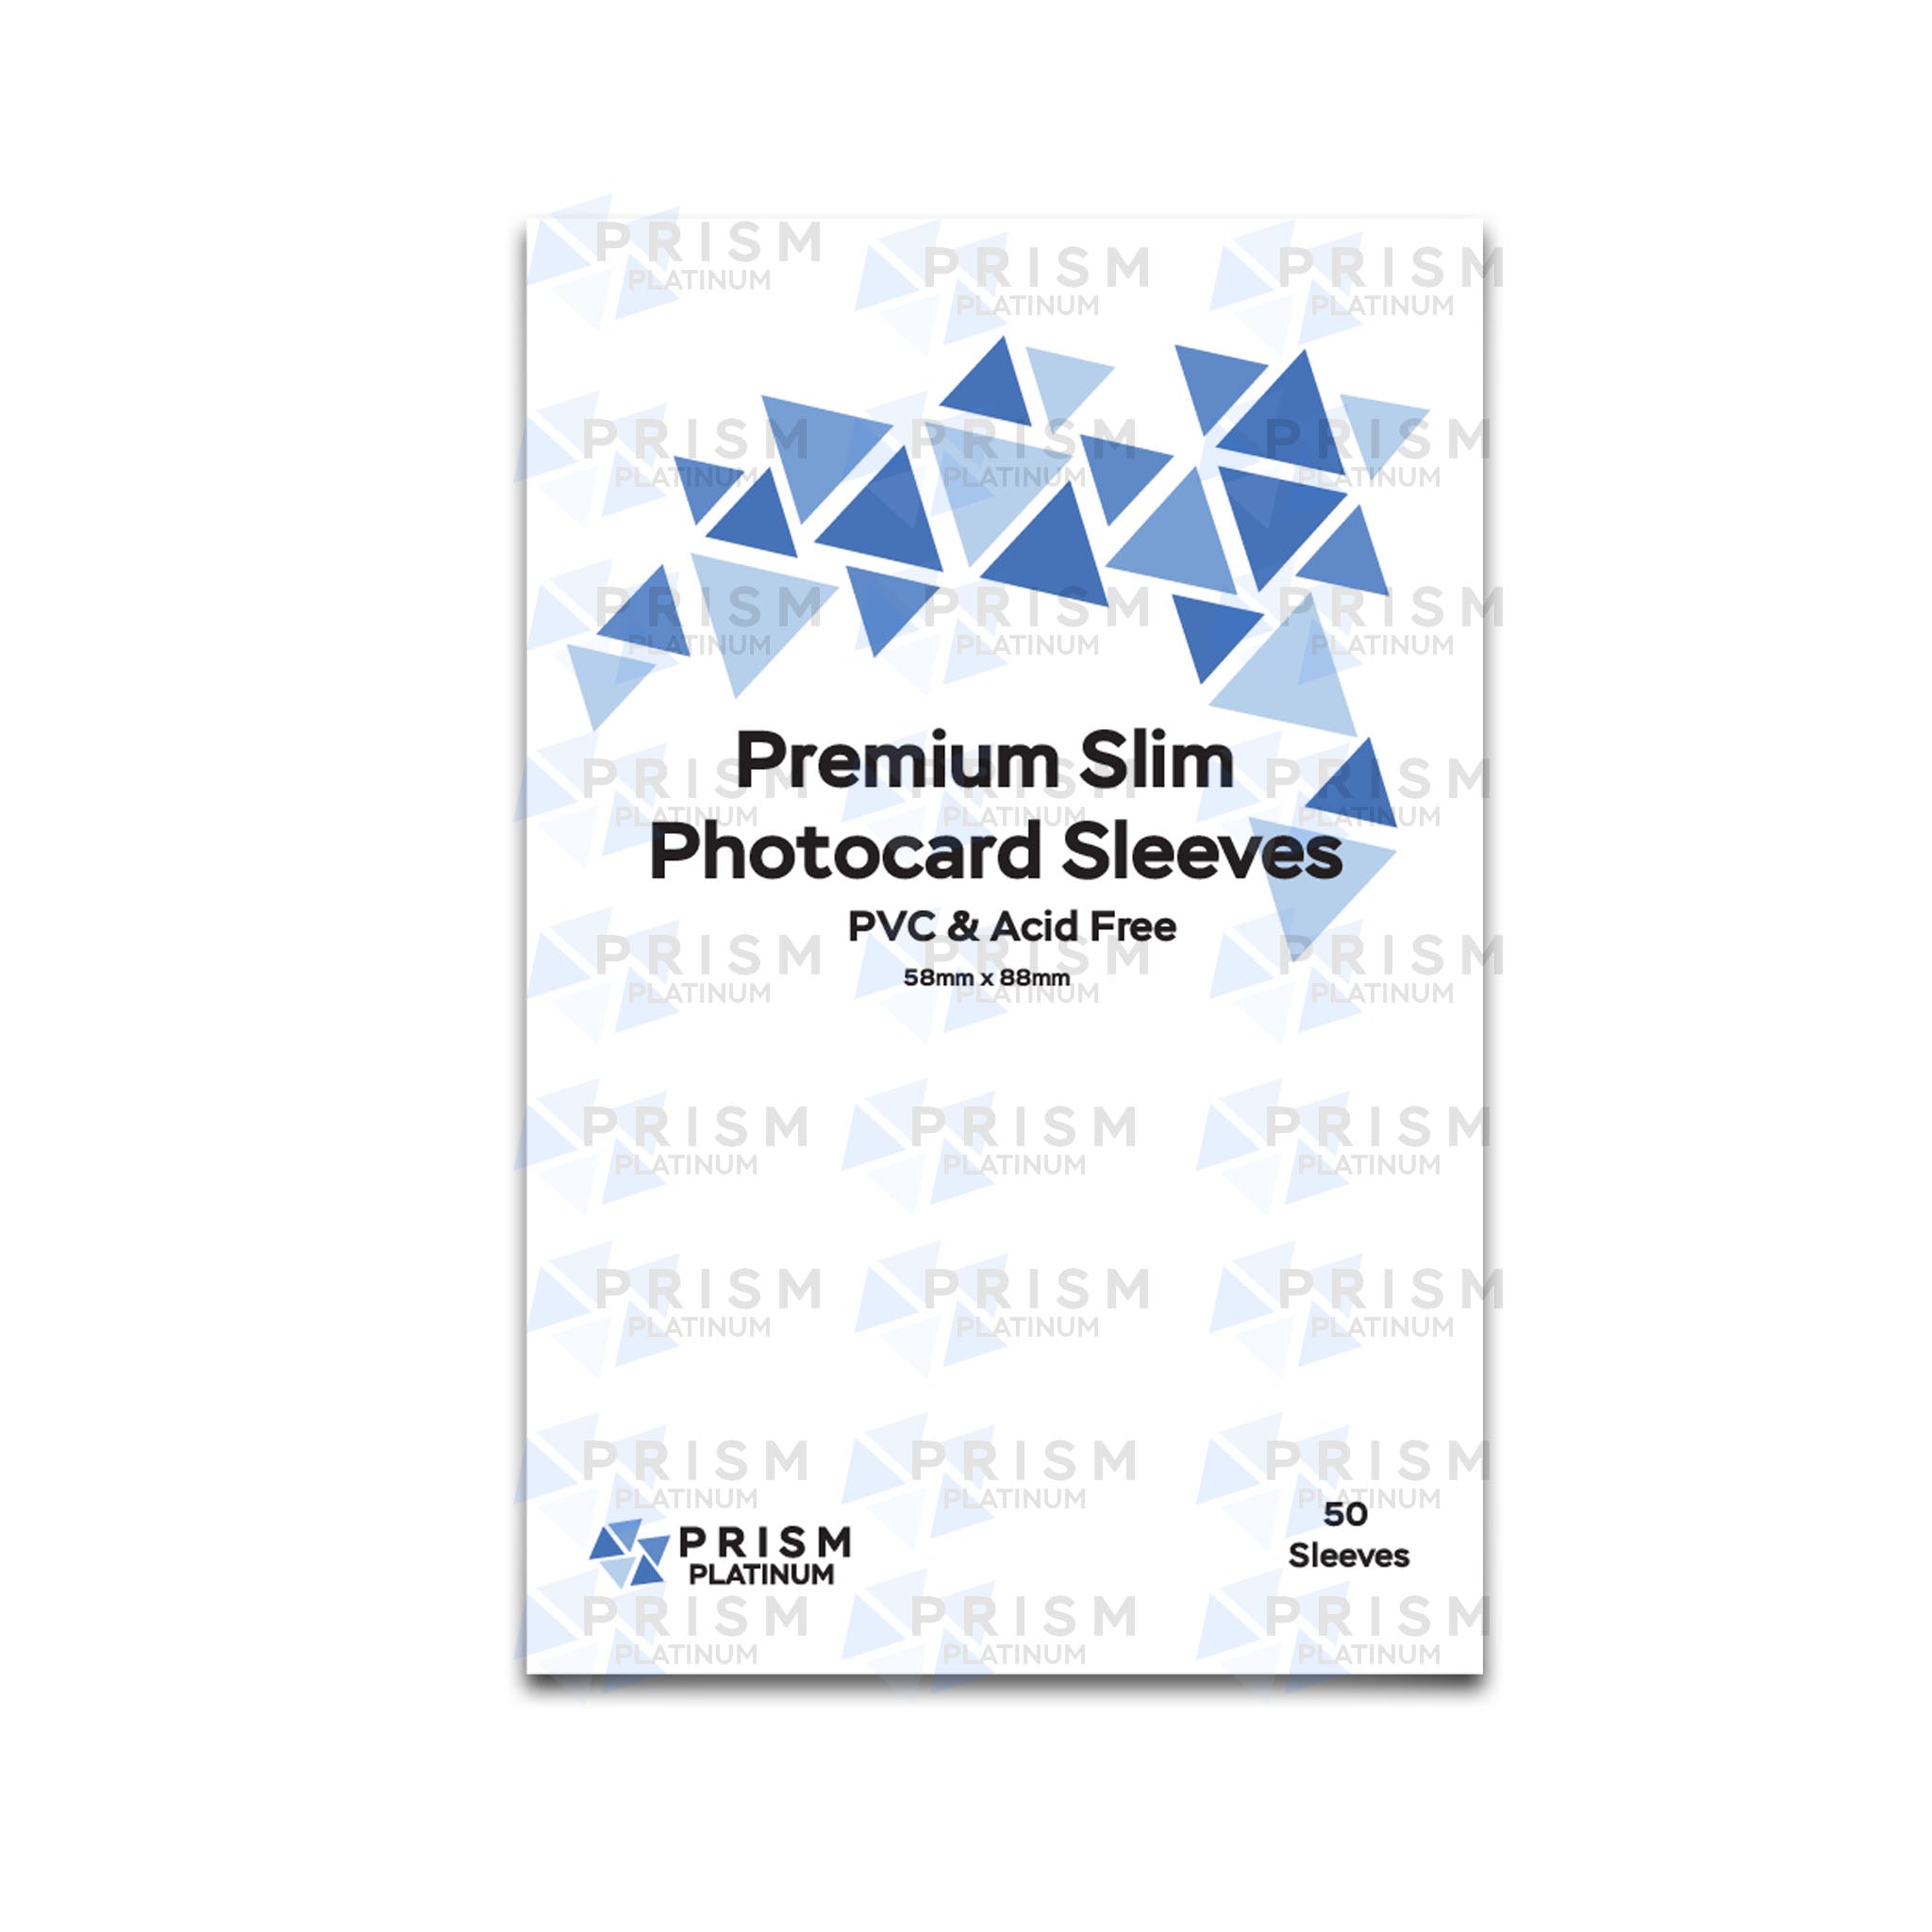 Premium Slim Photocard Sleeves - Prism Platinum